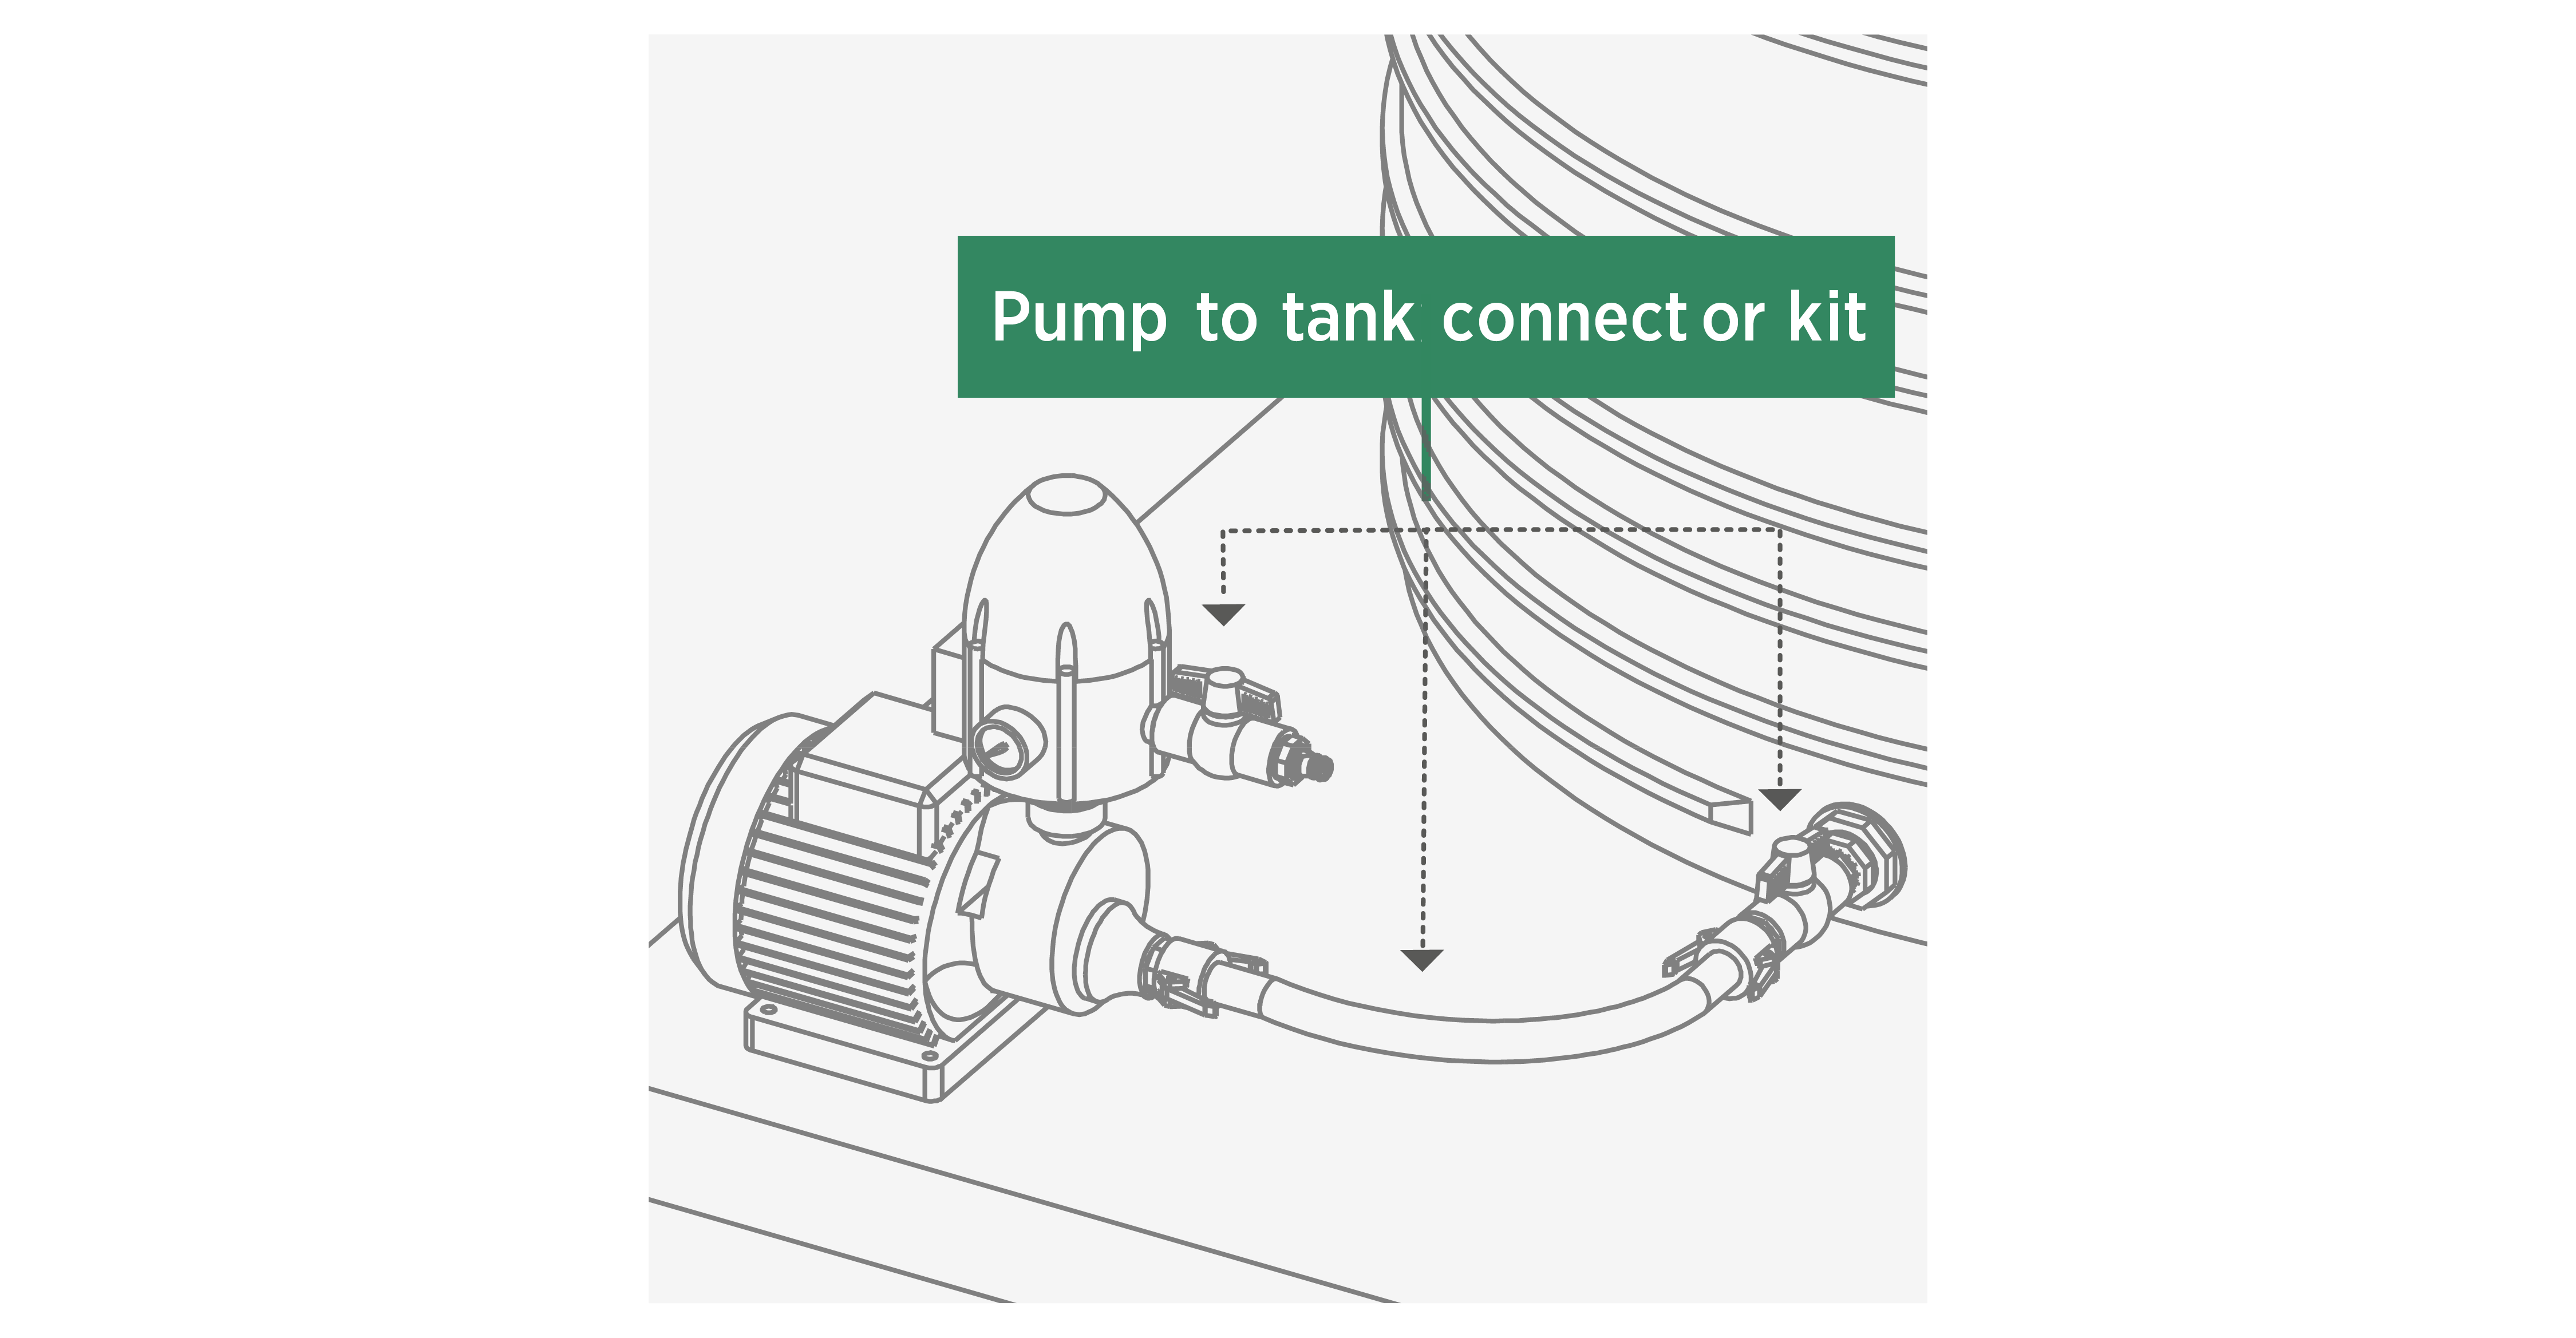 2. Plumbing – tank to pump